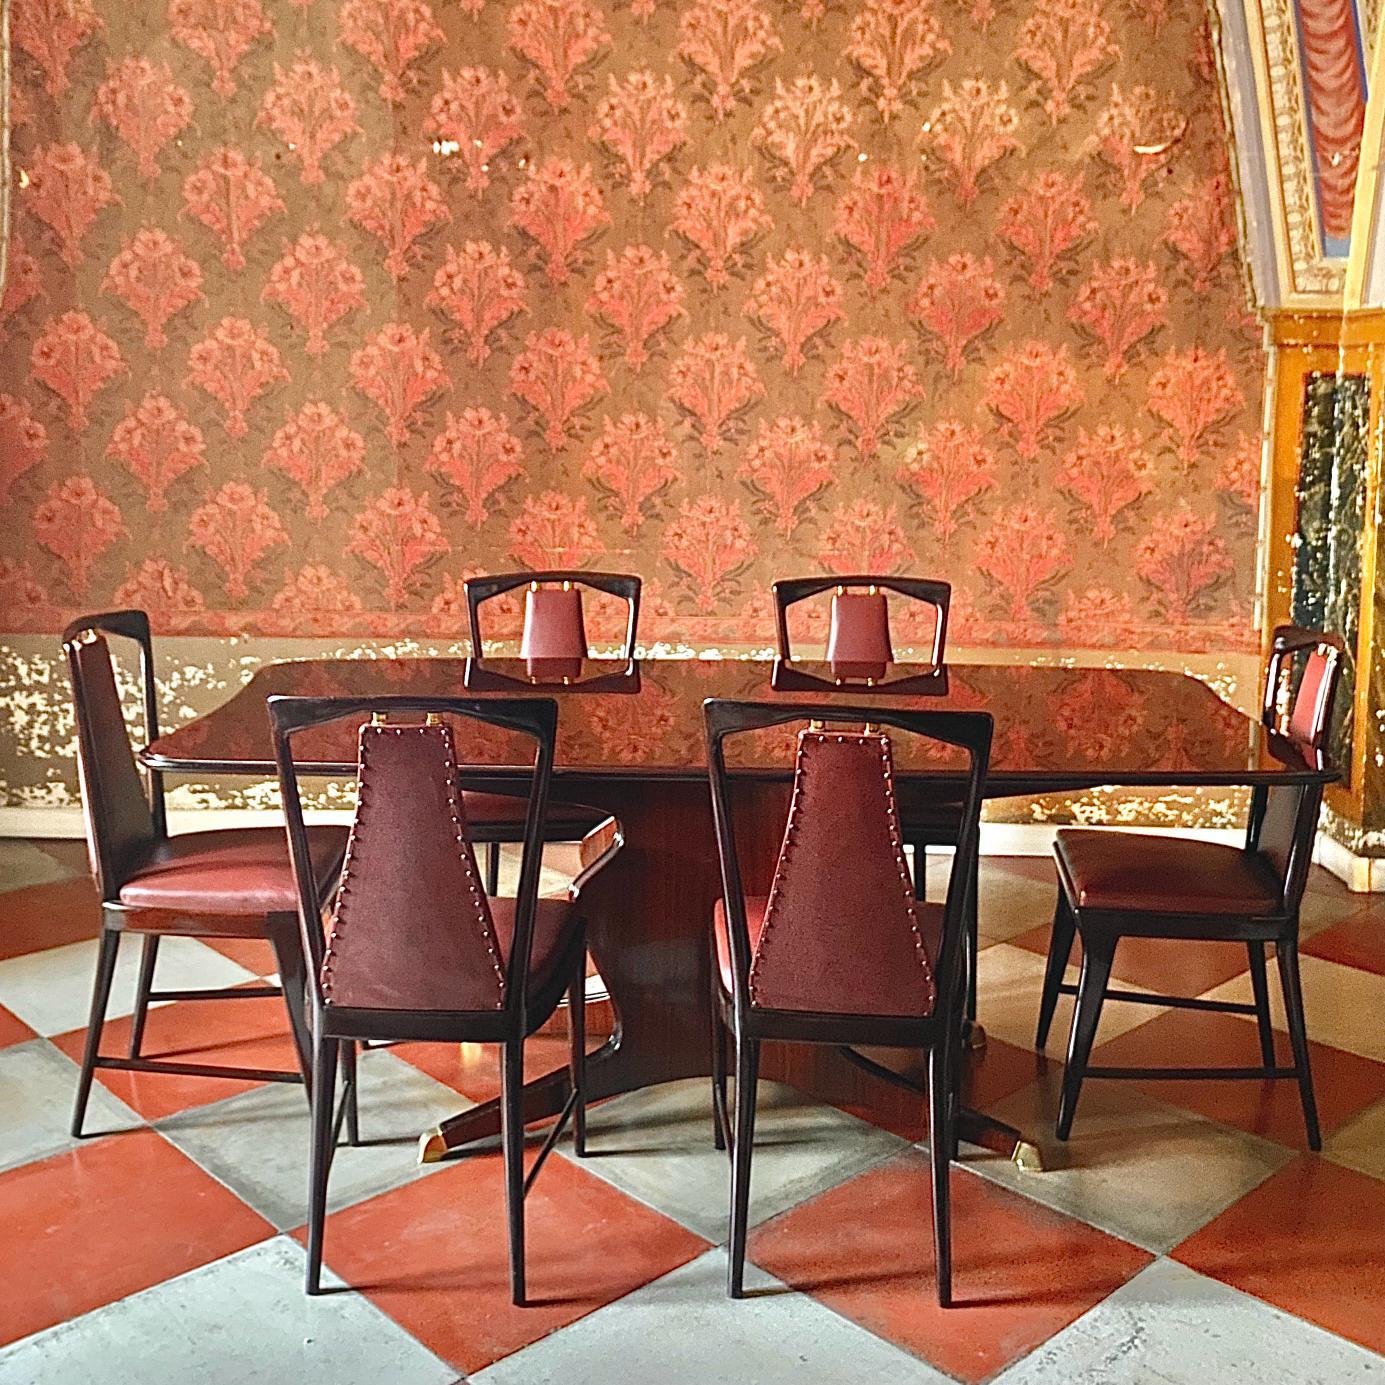 Salle à manger en acajou et palissandre, Osvaldo Borsani pour Atelier Borsani Varedo, Italie 1950's

Elegant ensemble de salle à manger vintage composé de six chaises en acajou massif et faux cuir rouge, d'un bois de peuplier massif magnifiquement